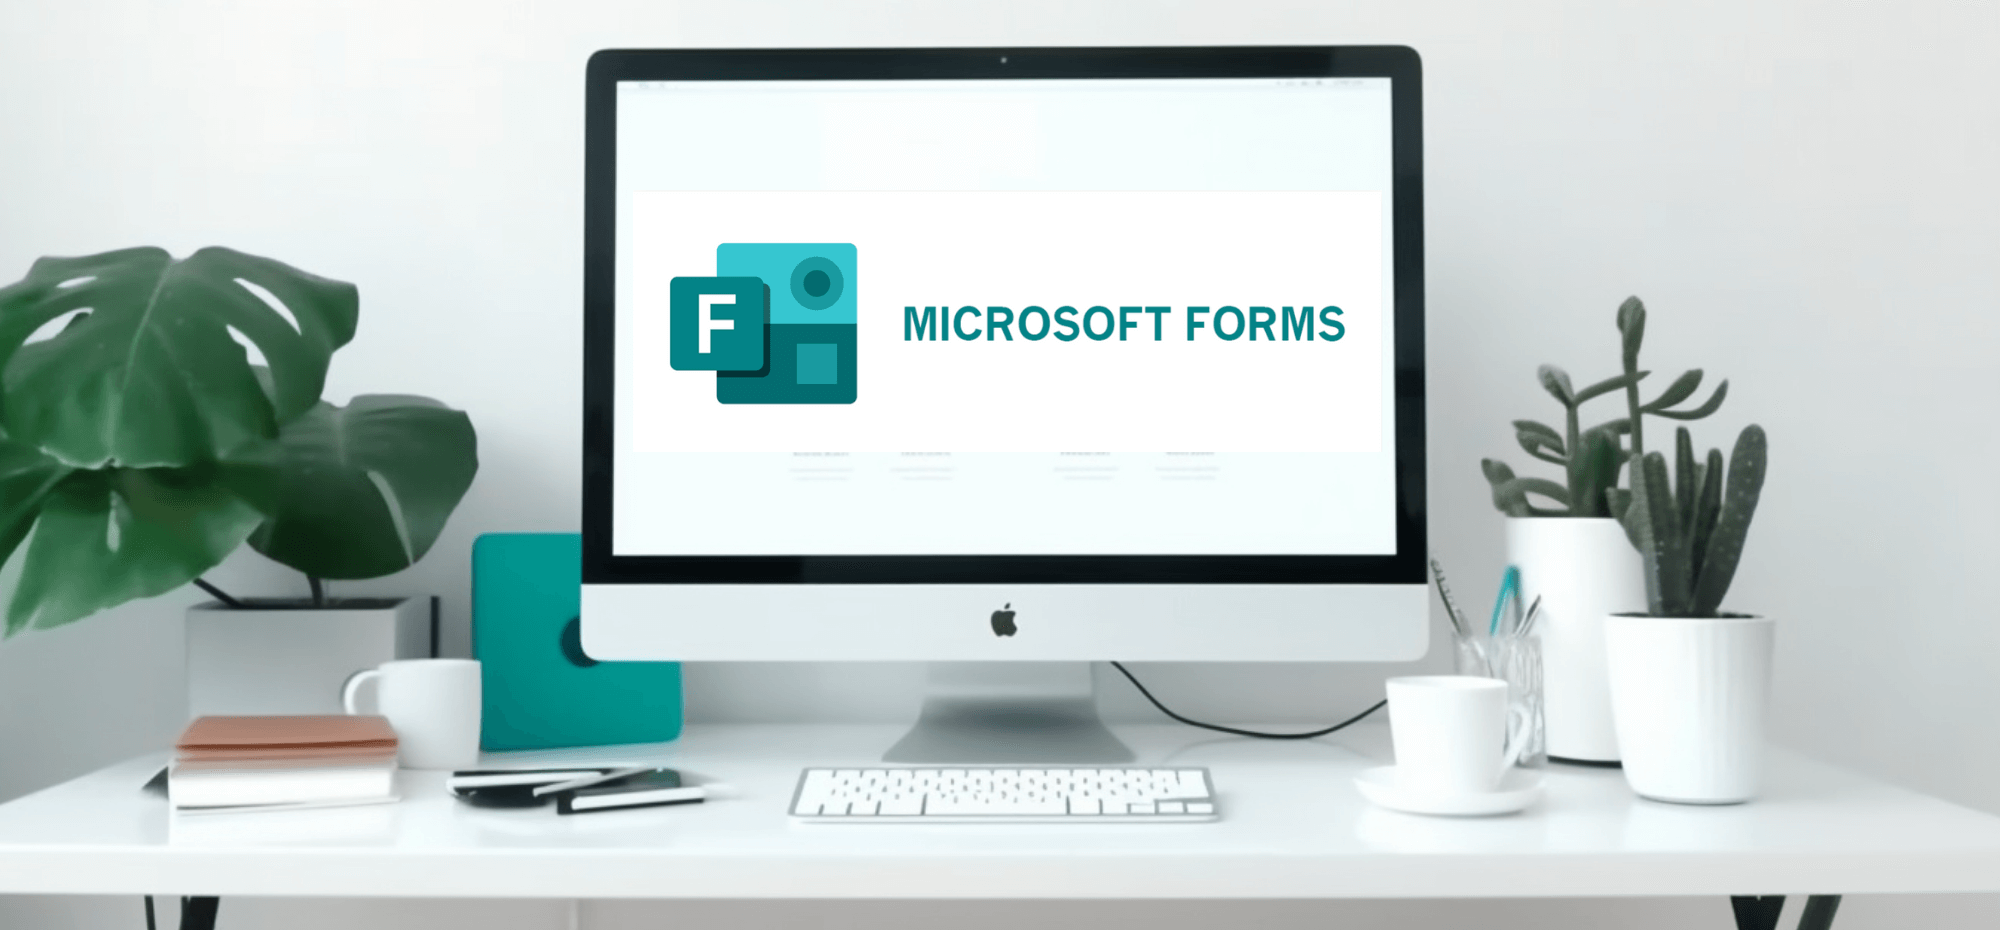 การใช้ตัวสร้างโค้ด QR สำหรับ Microsoft Forms เพื่อรวบรวมข้อมูลอย่างมีประสิทธิภาพ